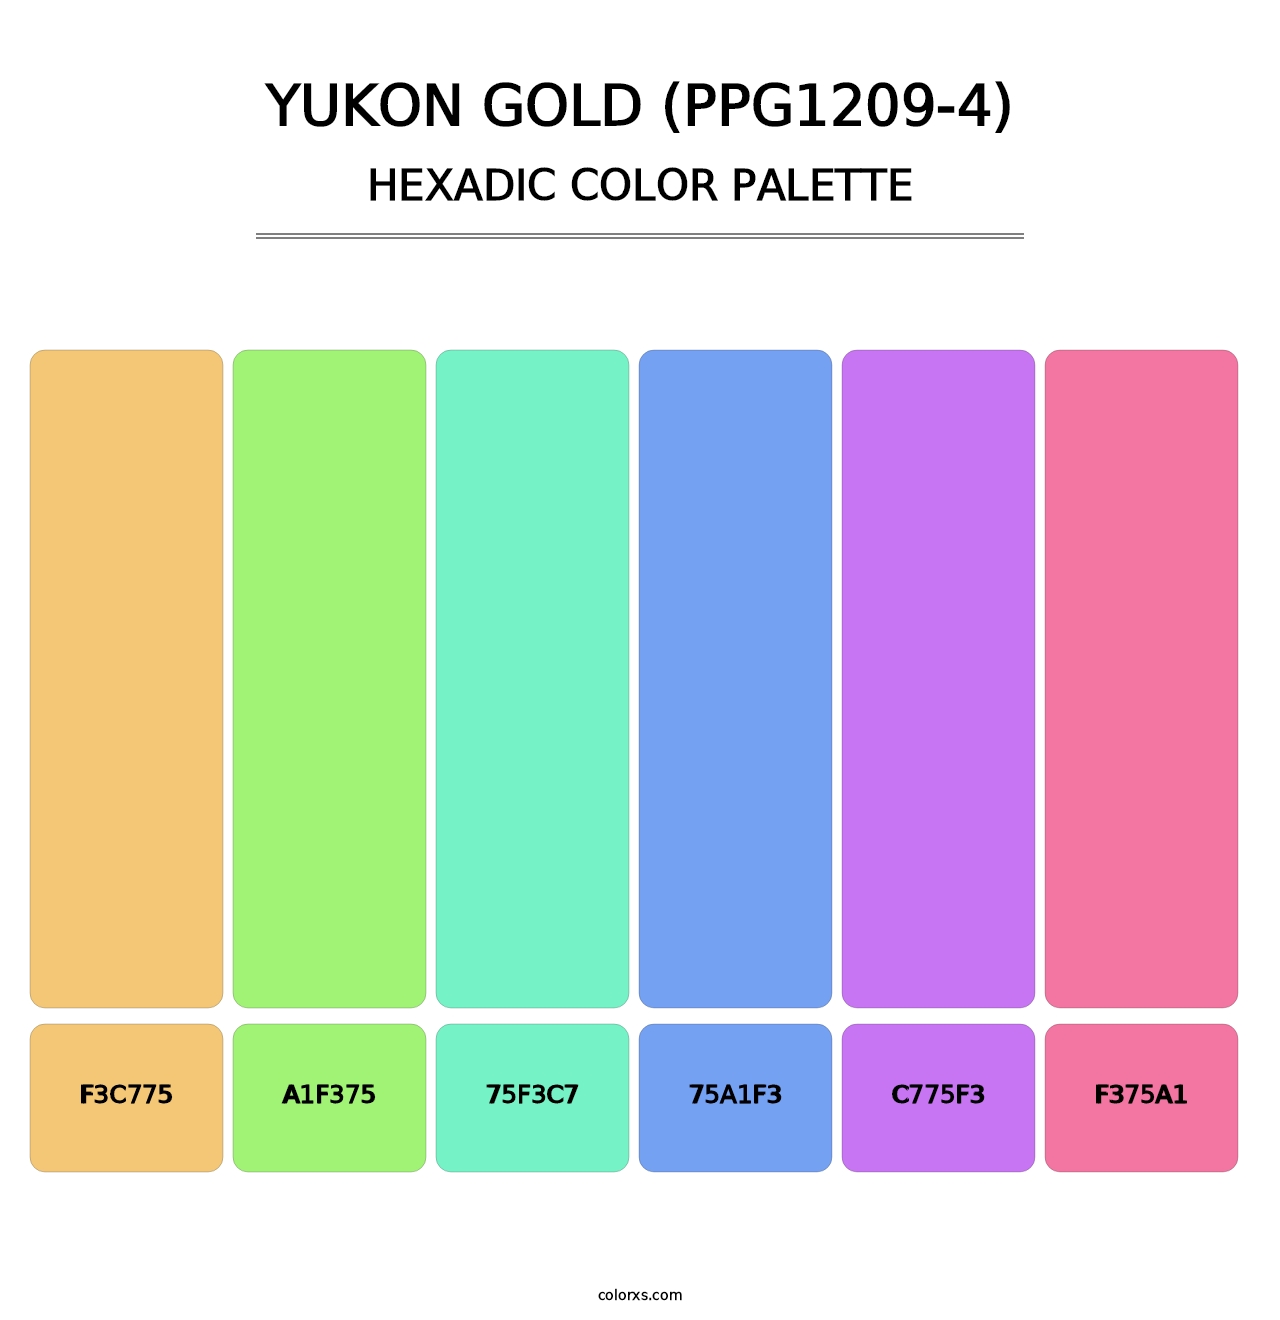 Yukon Gold (PPG1209-4) - Hexadic Color Palette